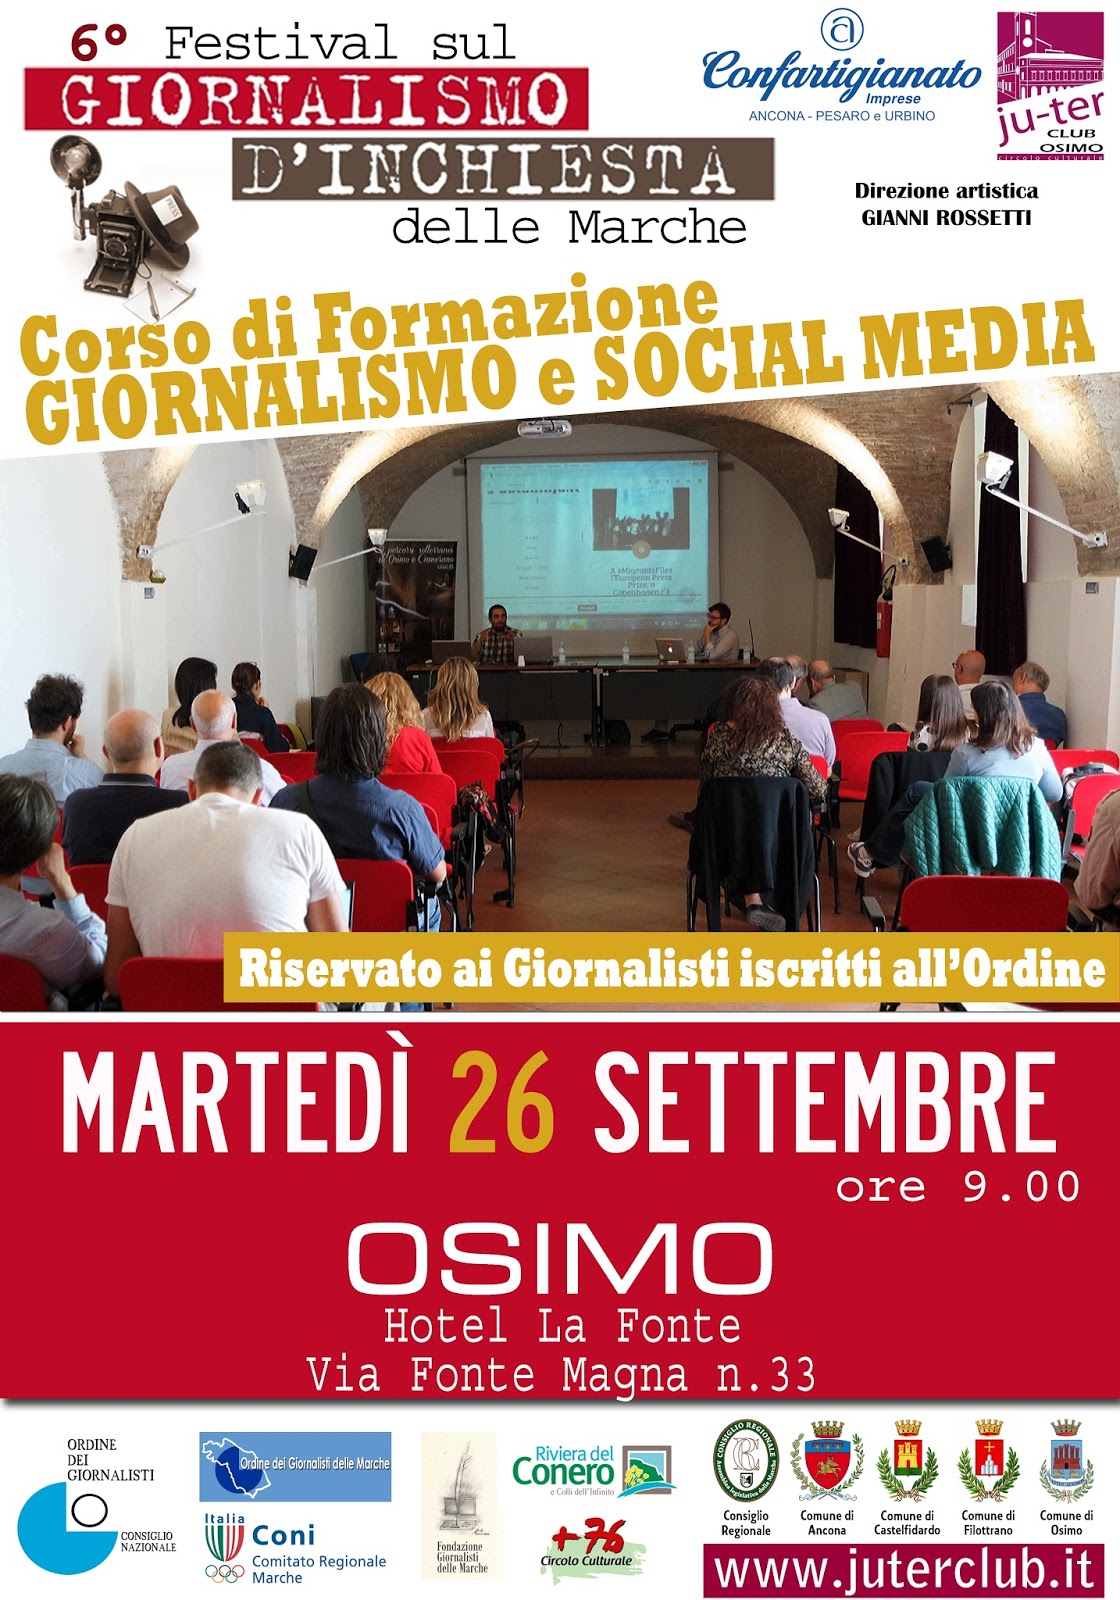 Dal 24 al 30 settembre nelle Marche c’è il Festival del giornalismo d’inchiesta